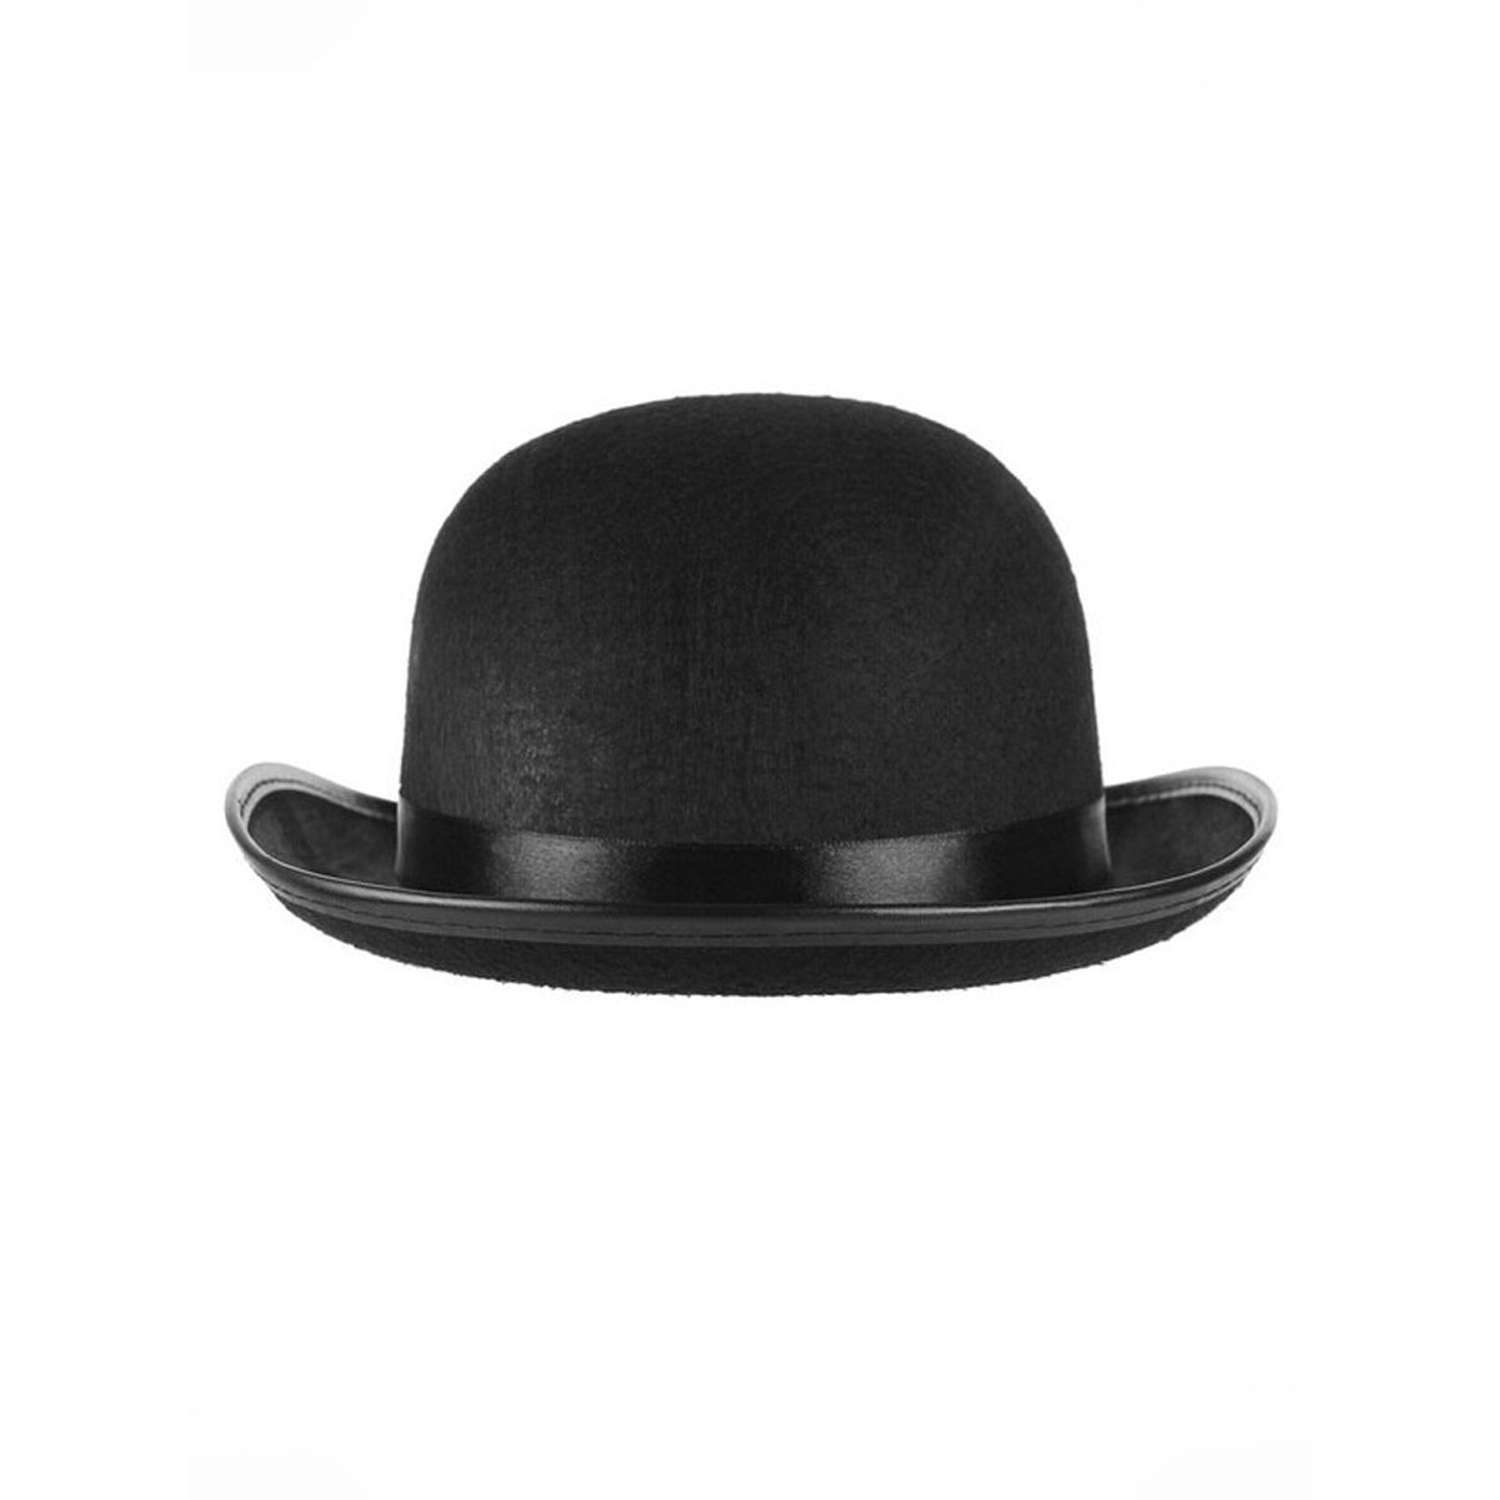 Карнавальный головной убор Riota шляпа фетровая котелок черный ДБ01-022 - фото 2